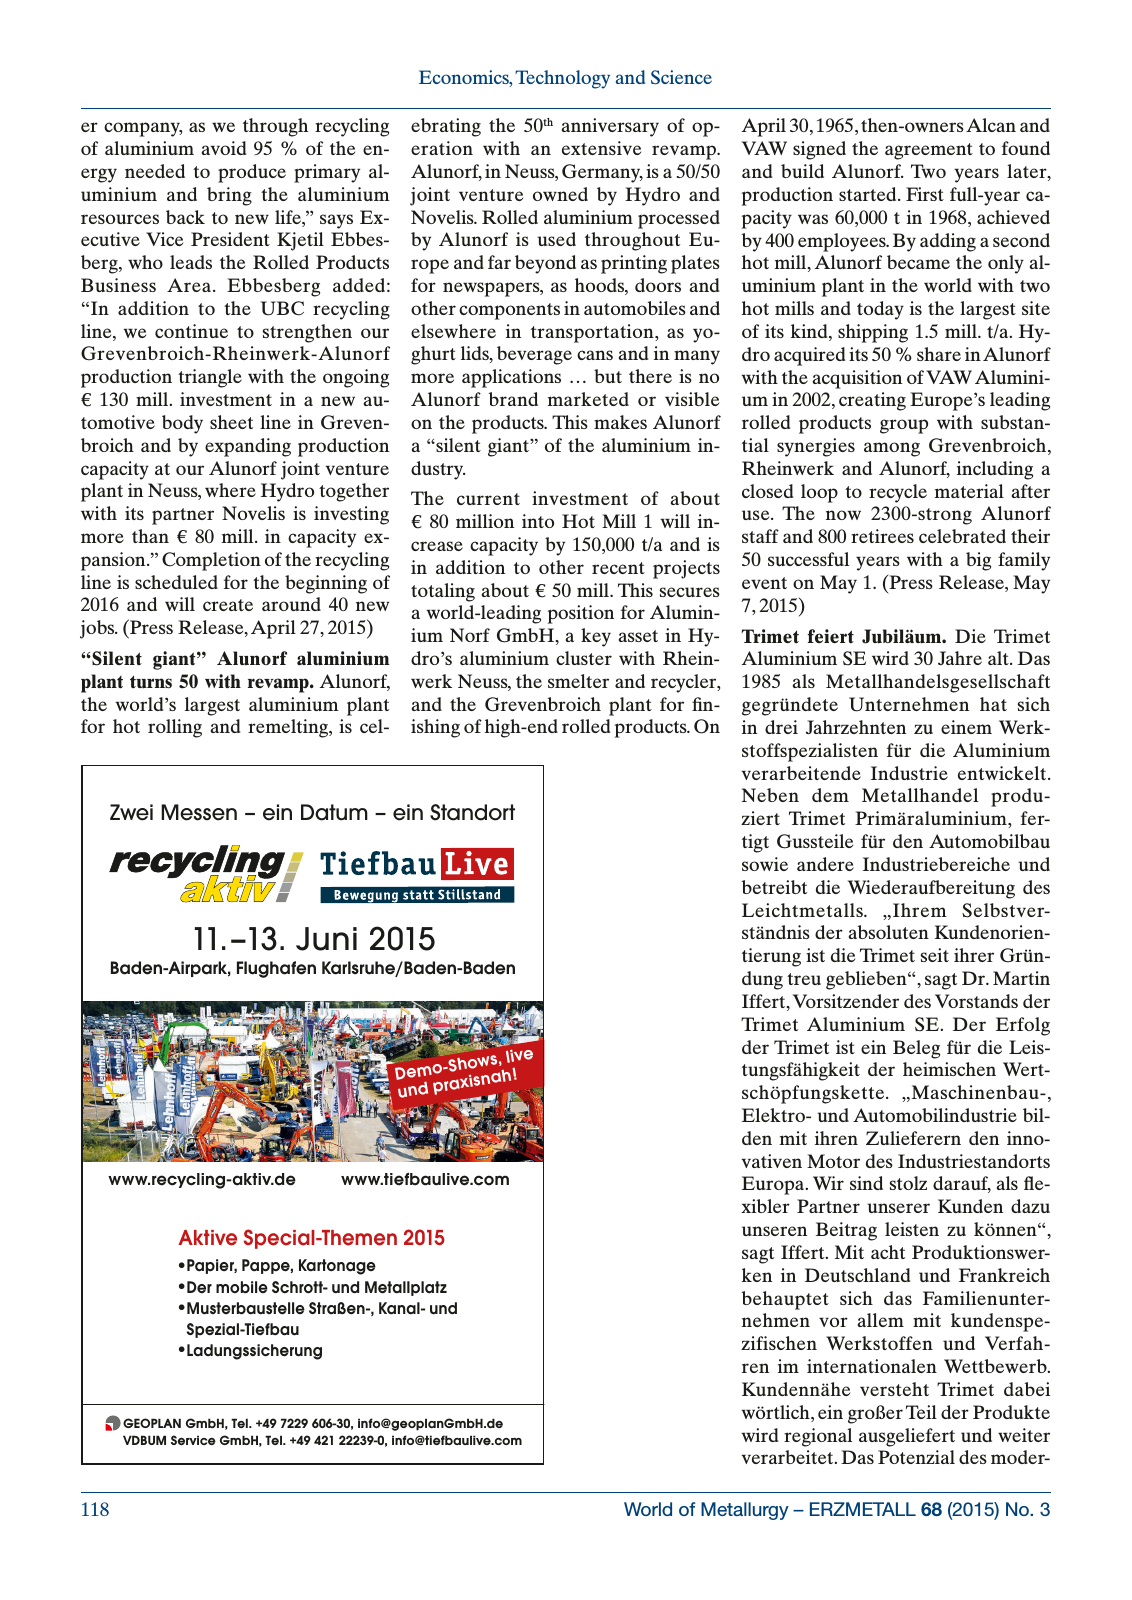 Vorschau World of Metallurgy 3/2015 Seite 12